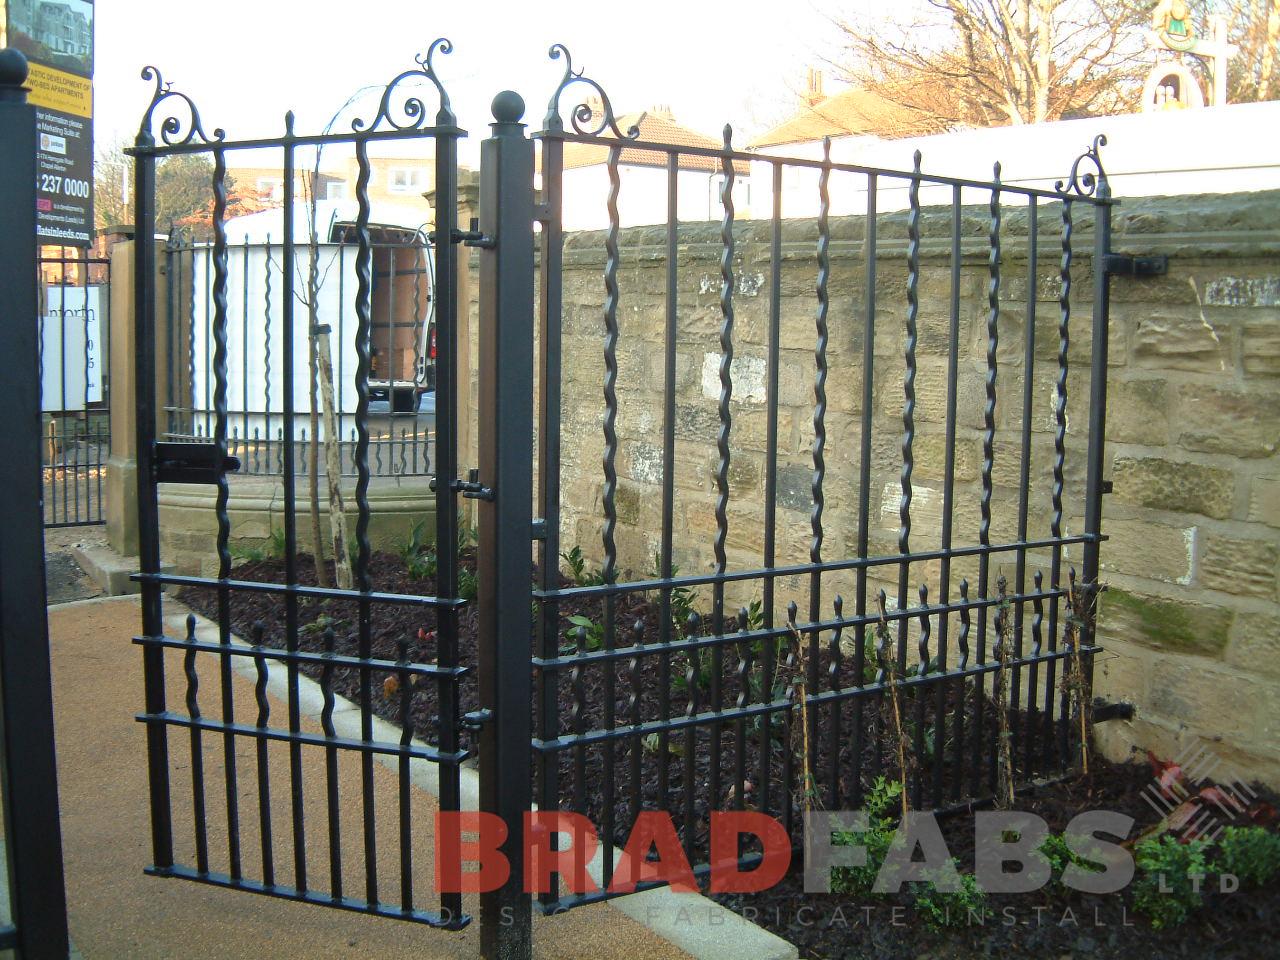 Wavy garden metal gates by Bradfabs